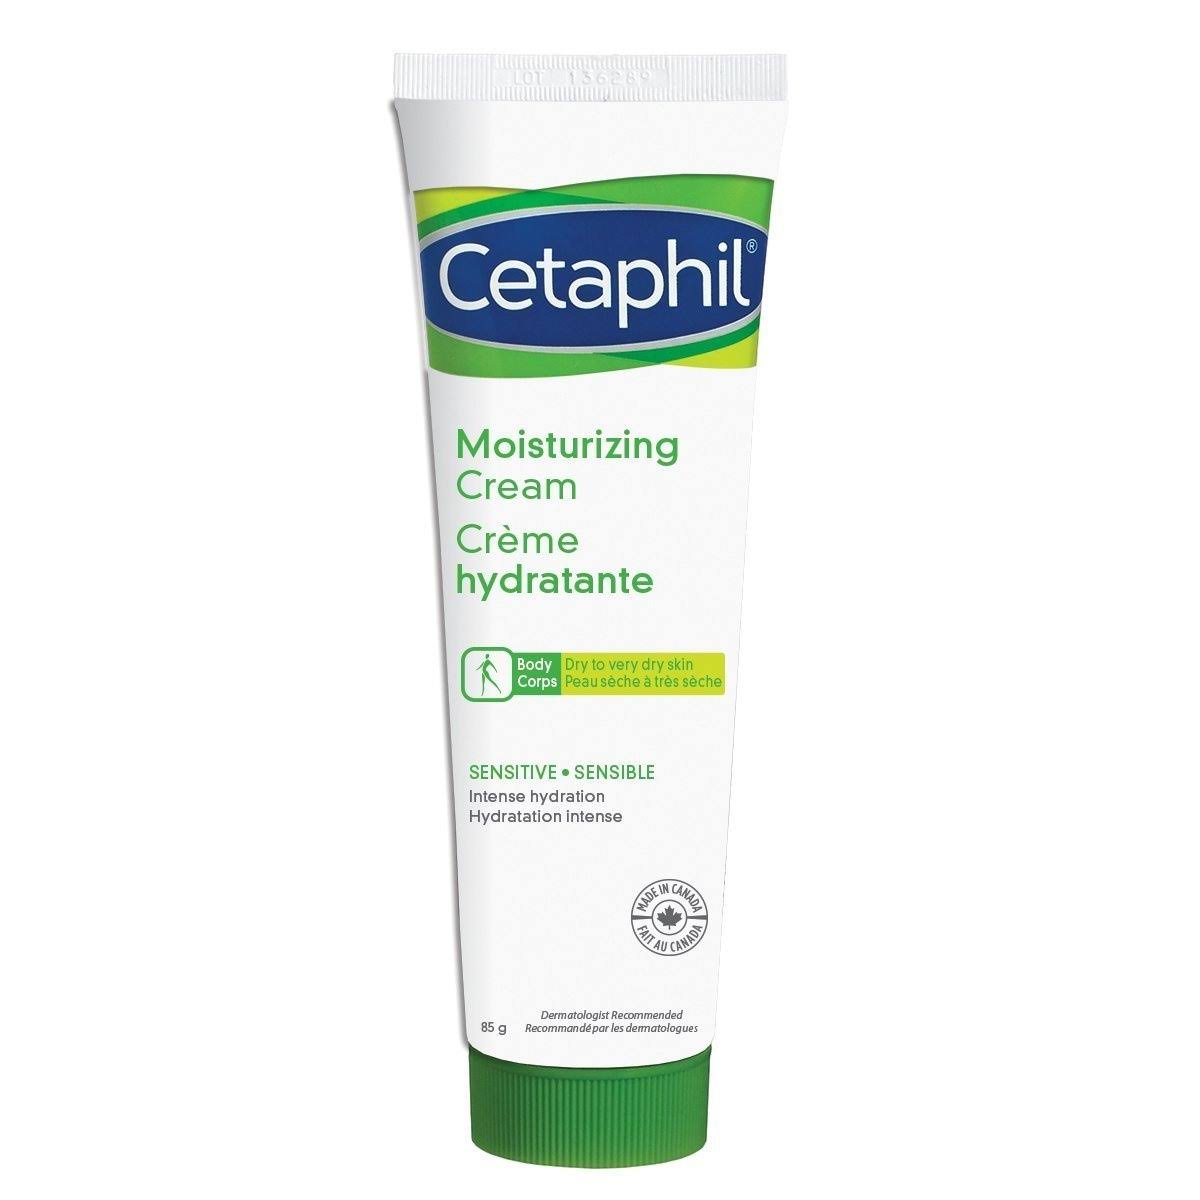 Cetaphil Moisturizing Cream - 85g